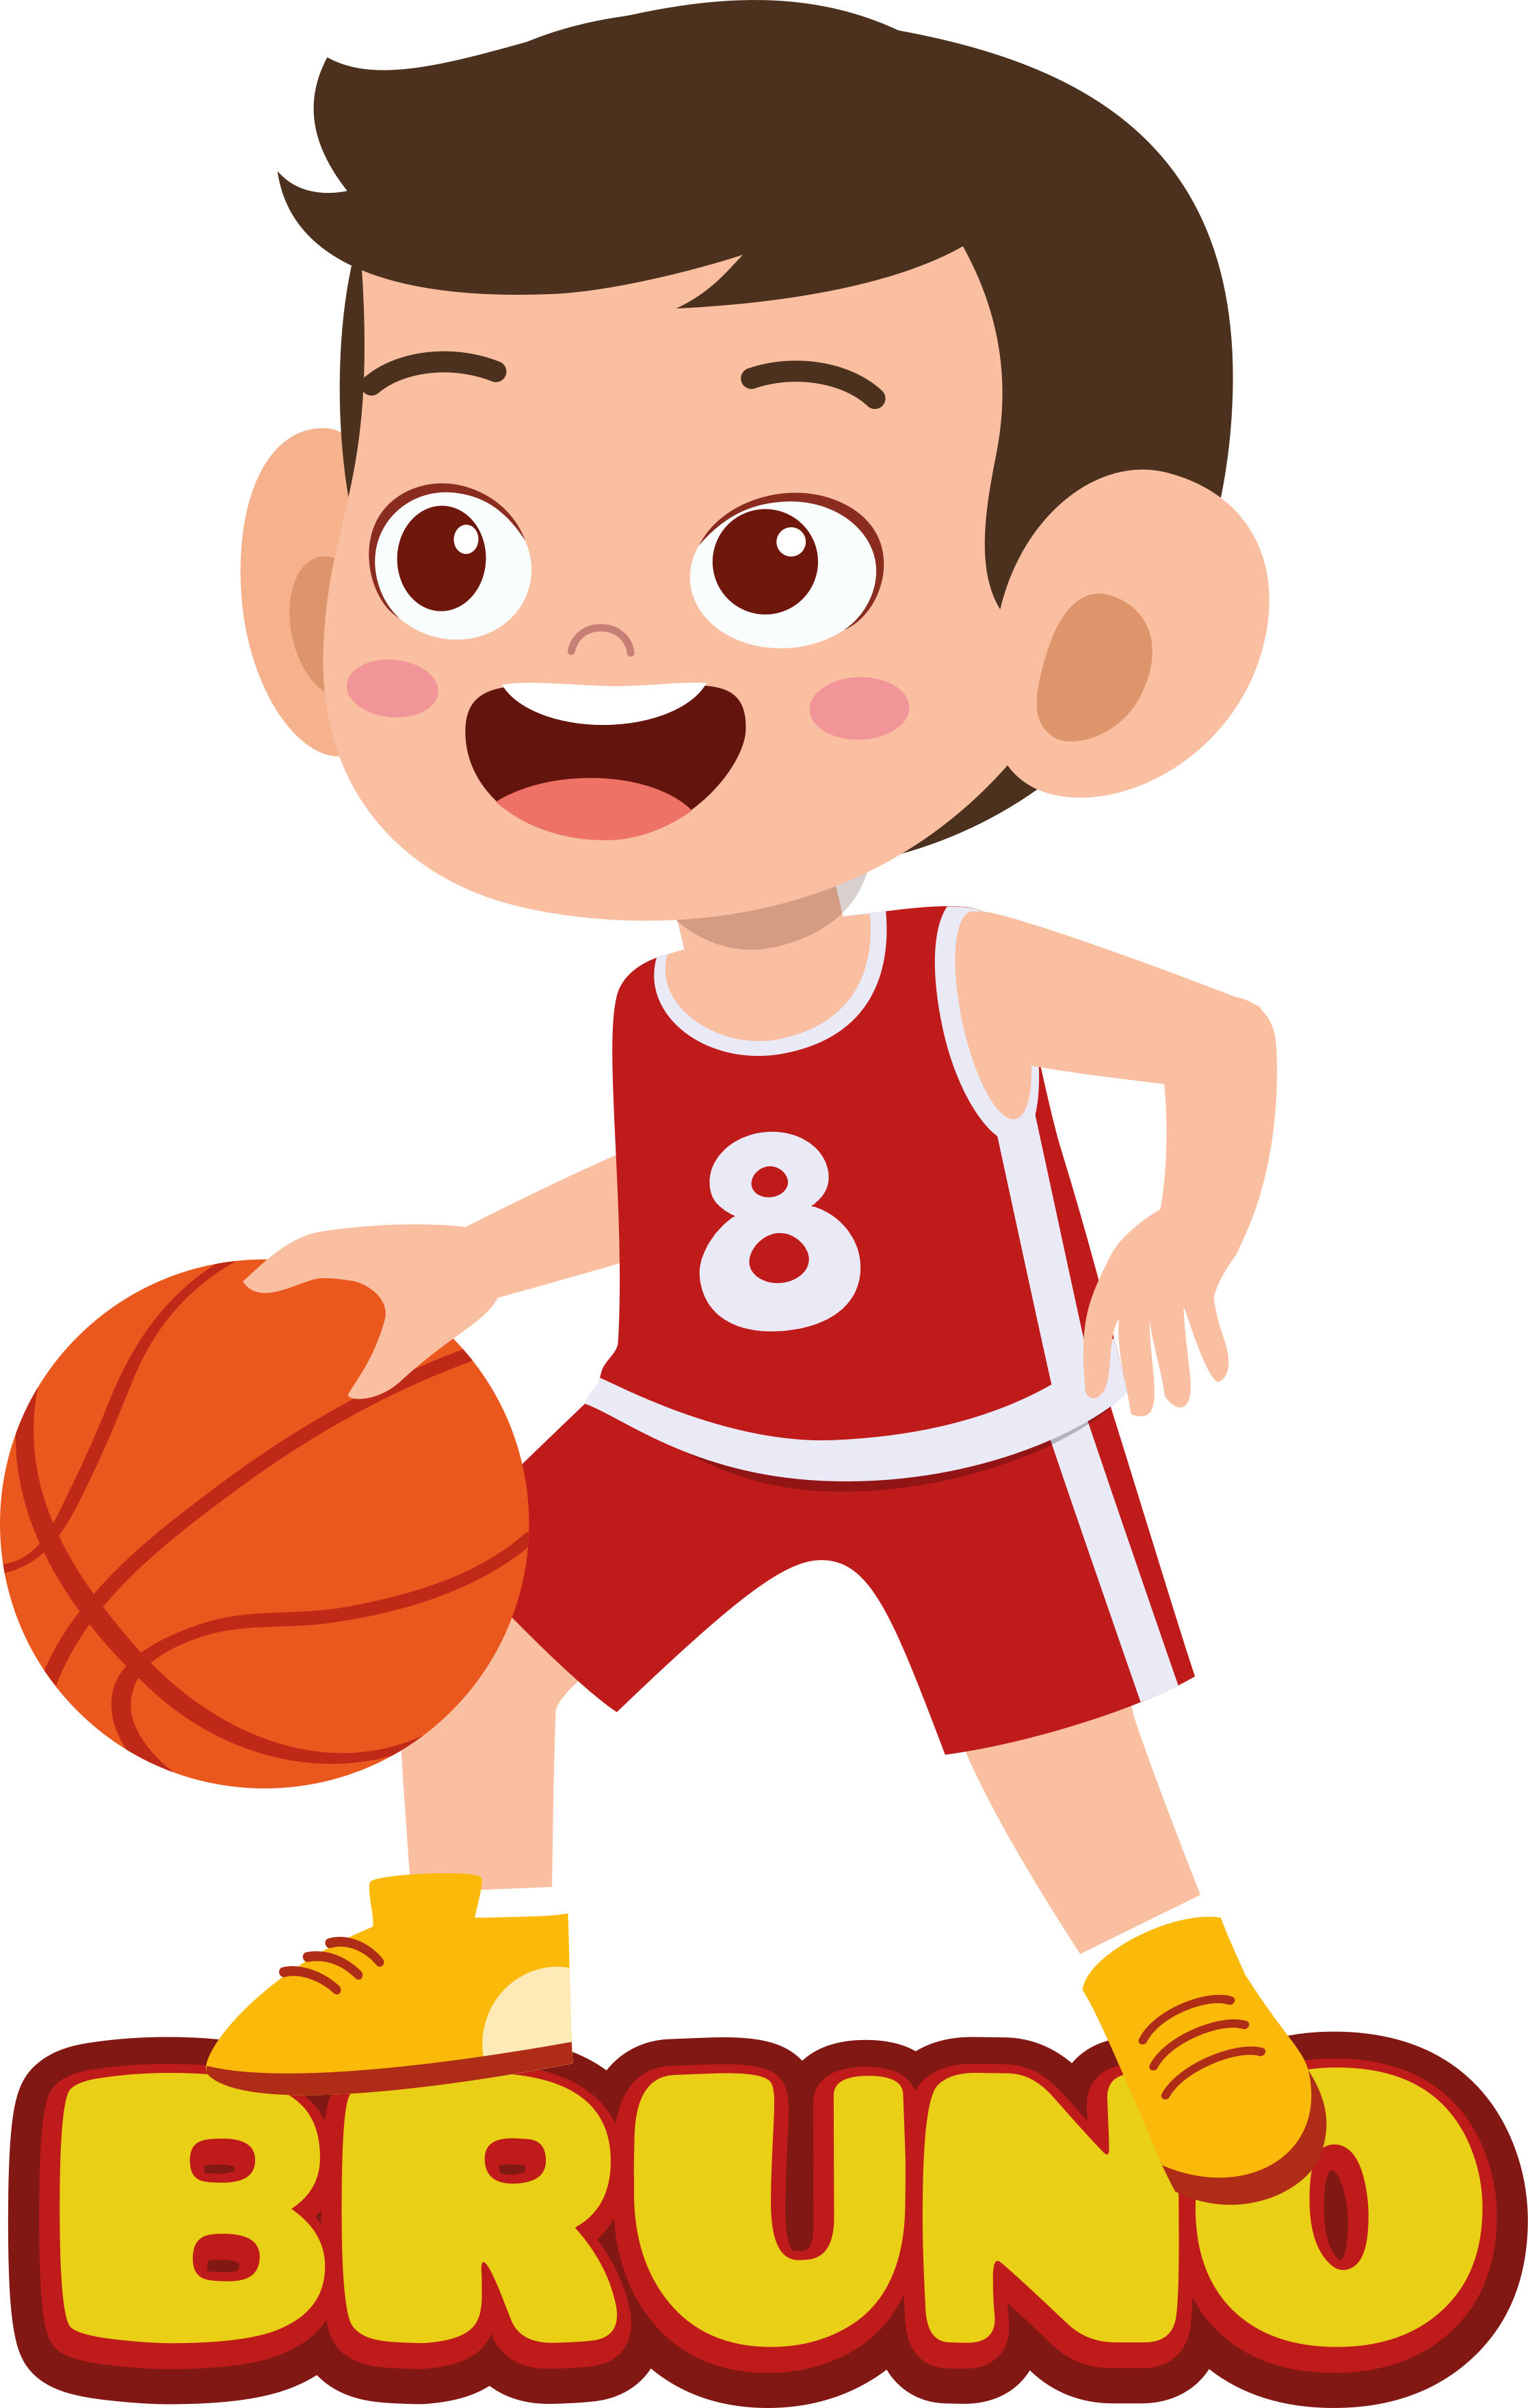 Camiseta roja jugadores de baloncesto niño